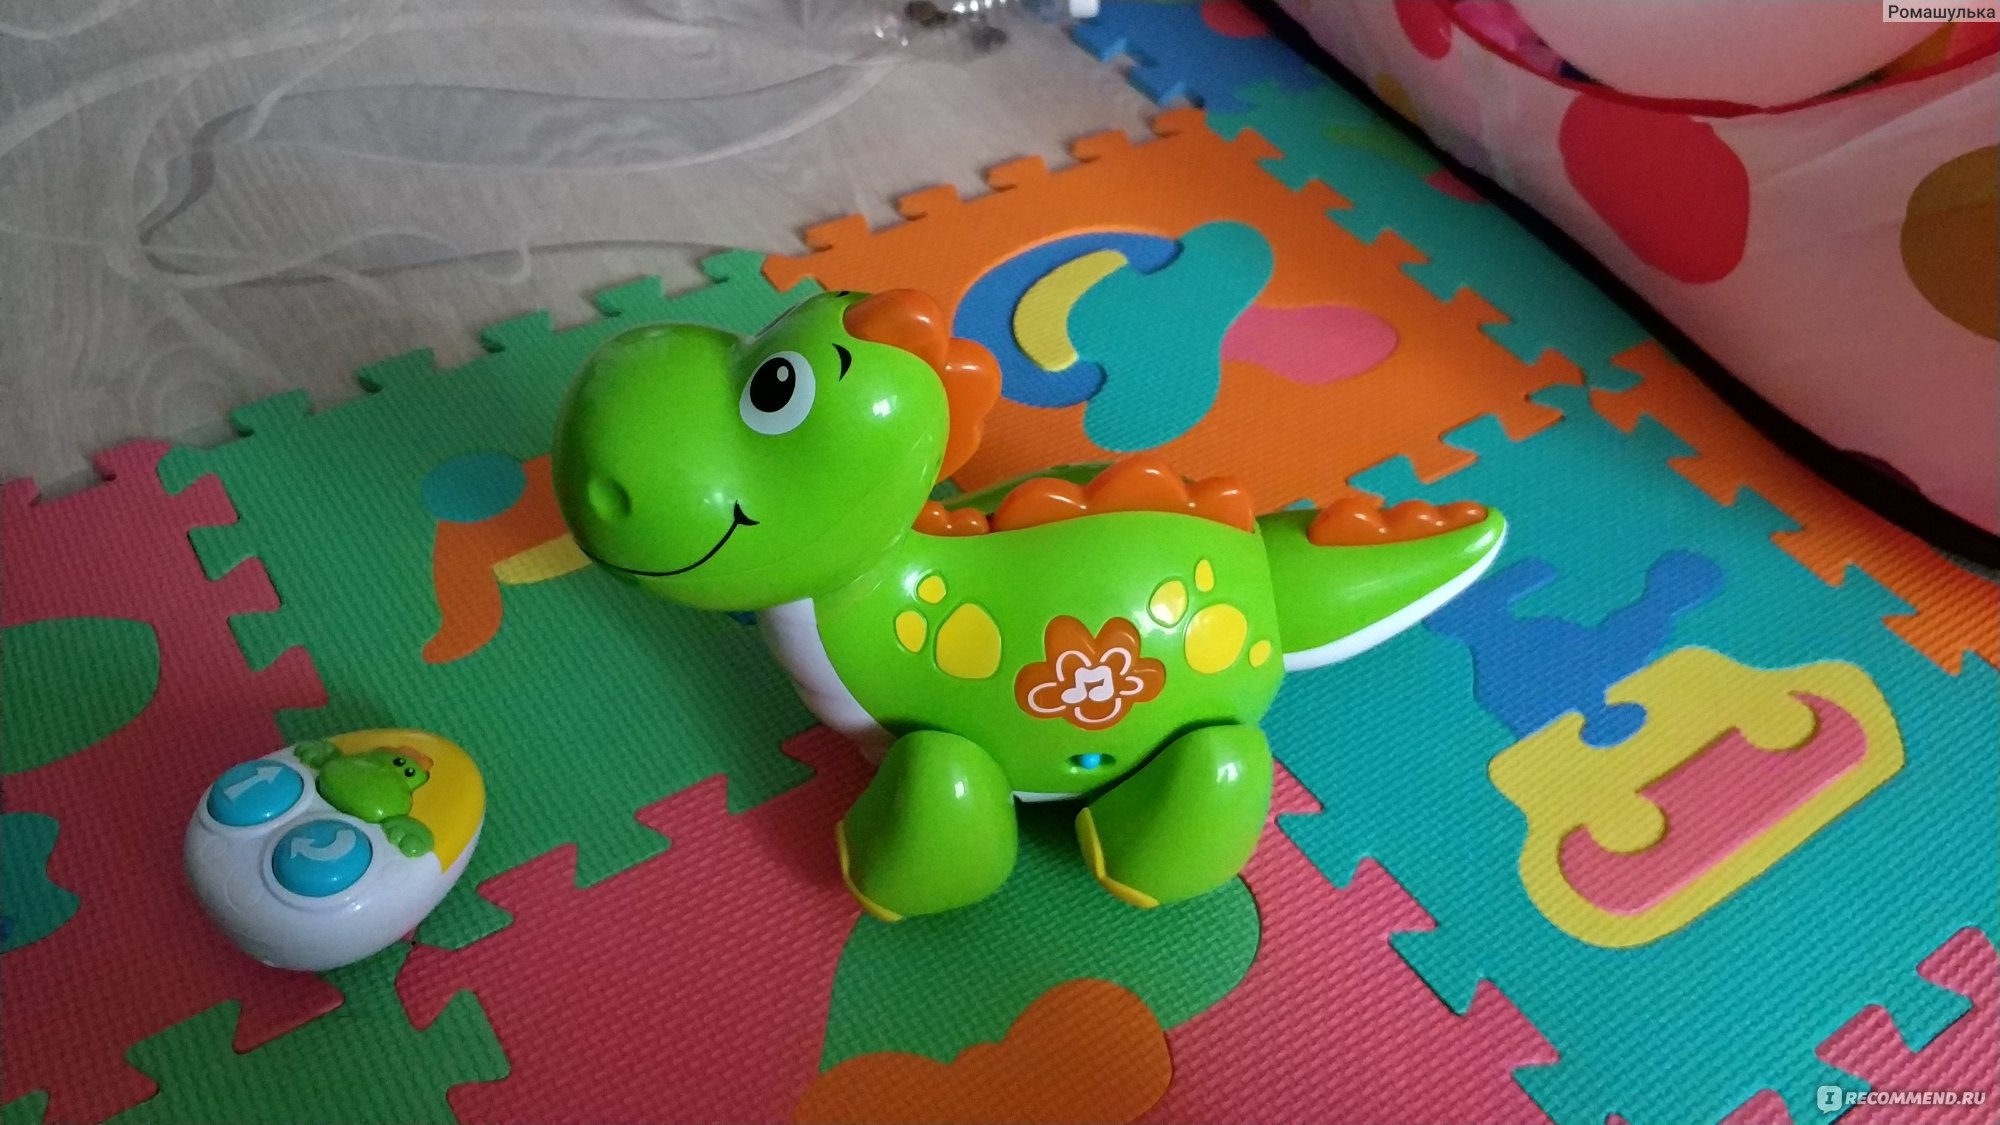 Динозаврик Baby go д/у